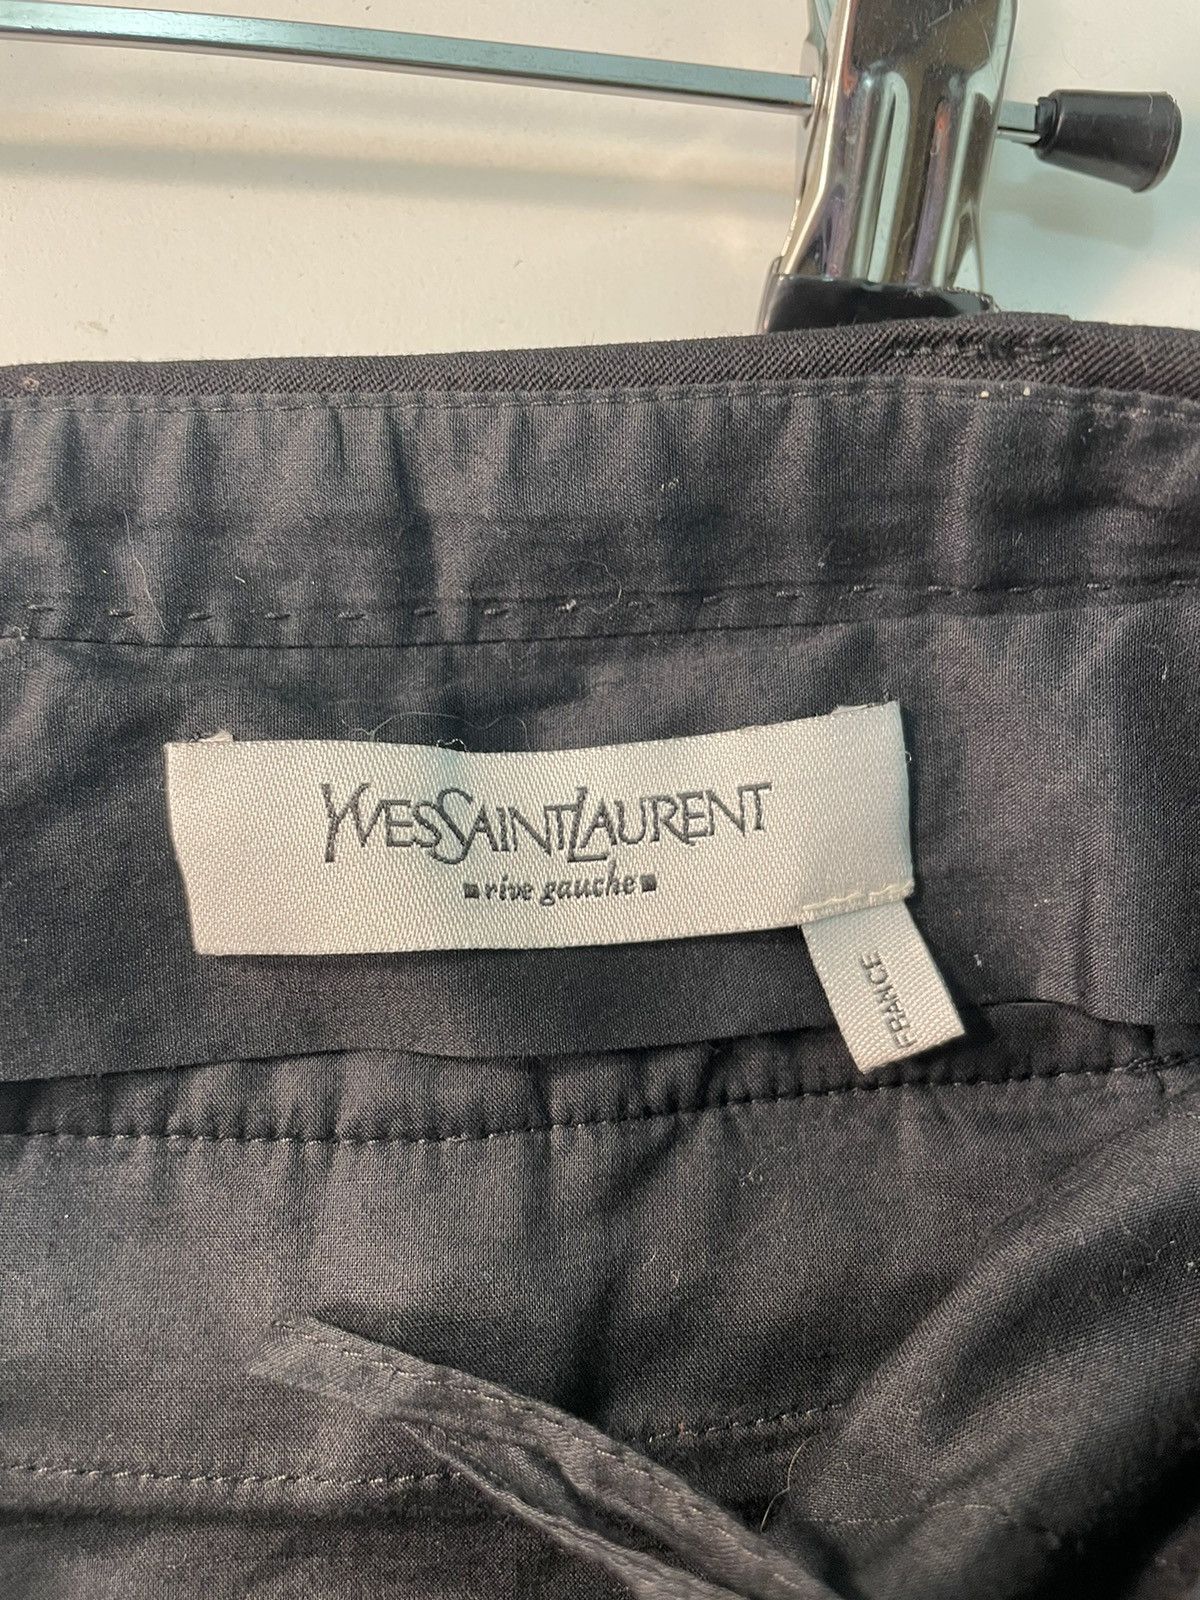 Yves Saint Laurent Vintage Yves Saint Laurent Black Wool Trousers Size 28”x30” Size 28" / US 6 / IT 42 - 4 Thumbnail